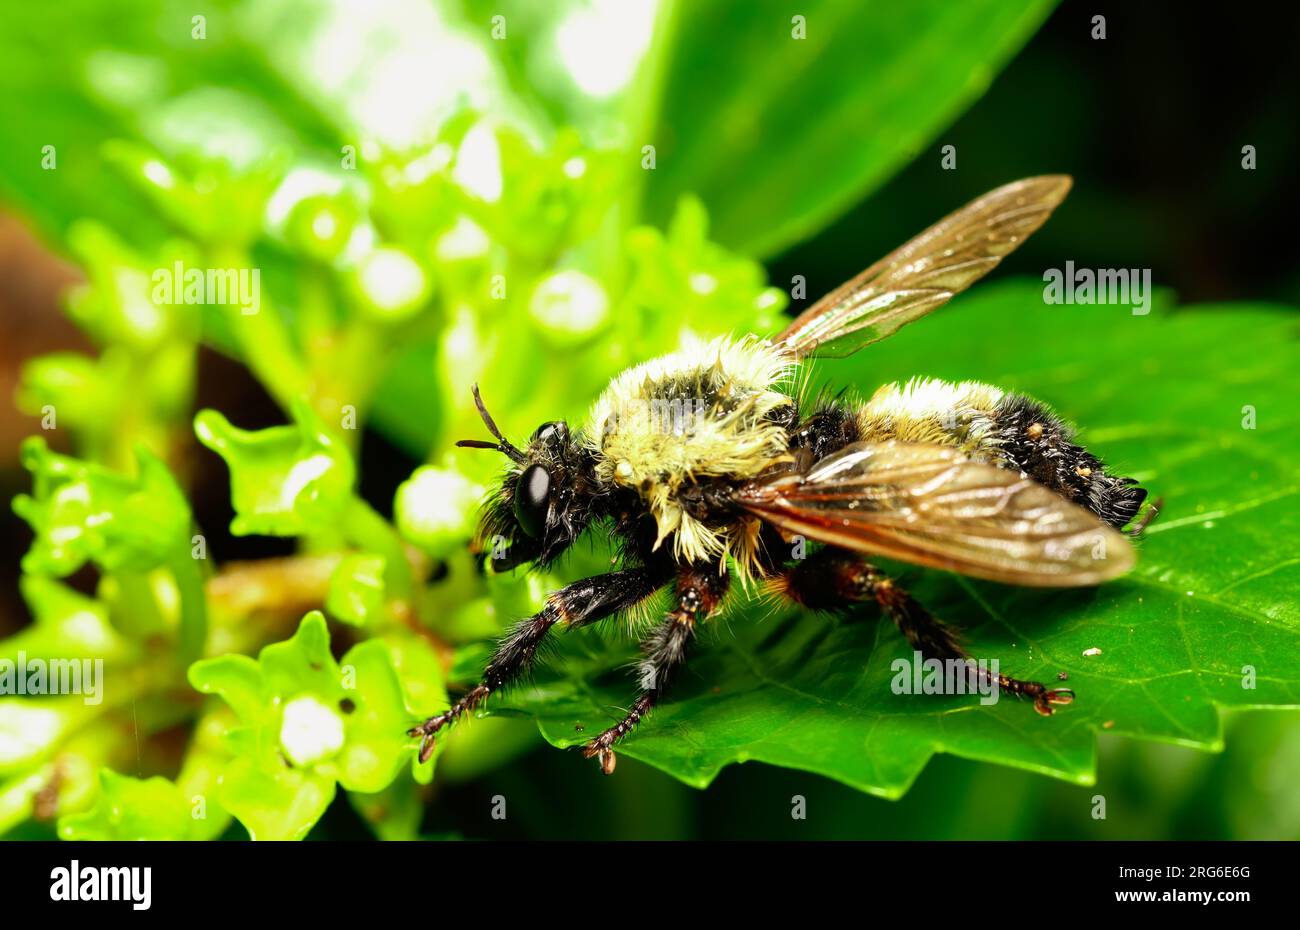 Les abeilles Bumble sont des pollinisateurs de natures. Leur bourdonnement bruyant est un signe de pollinisation croisée des plantes et des fleurs. Banque D'Images